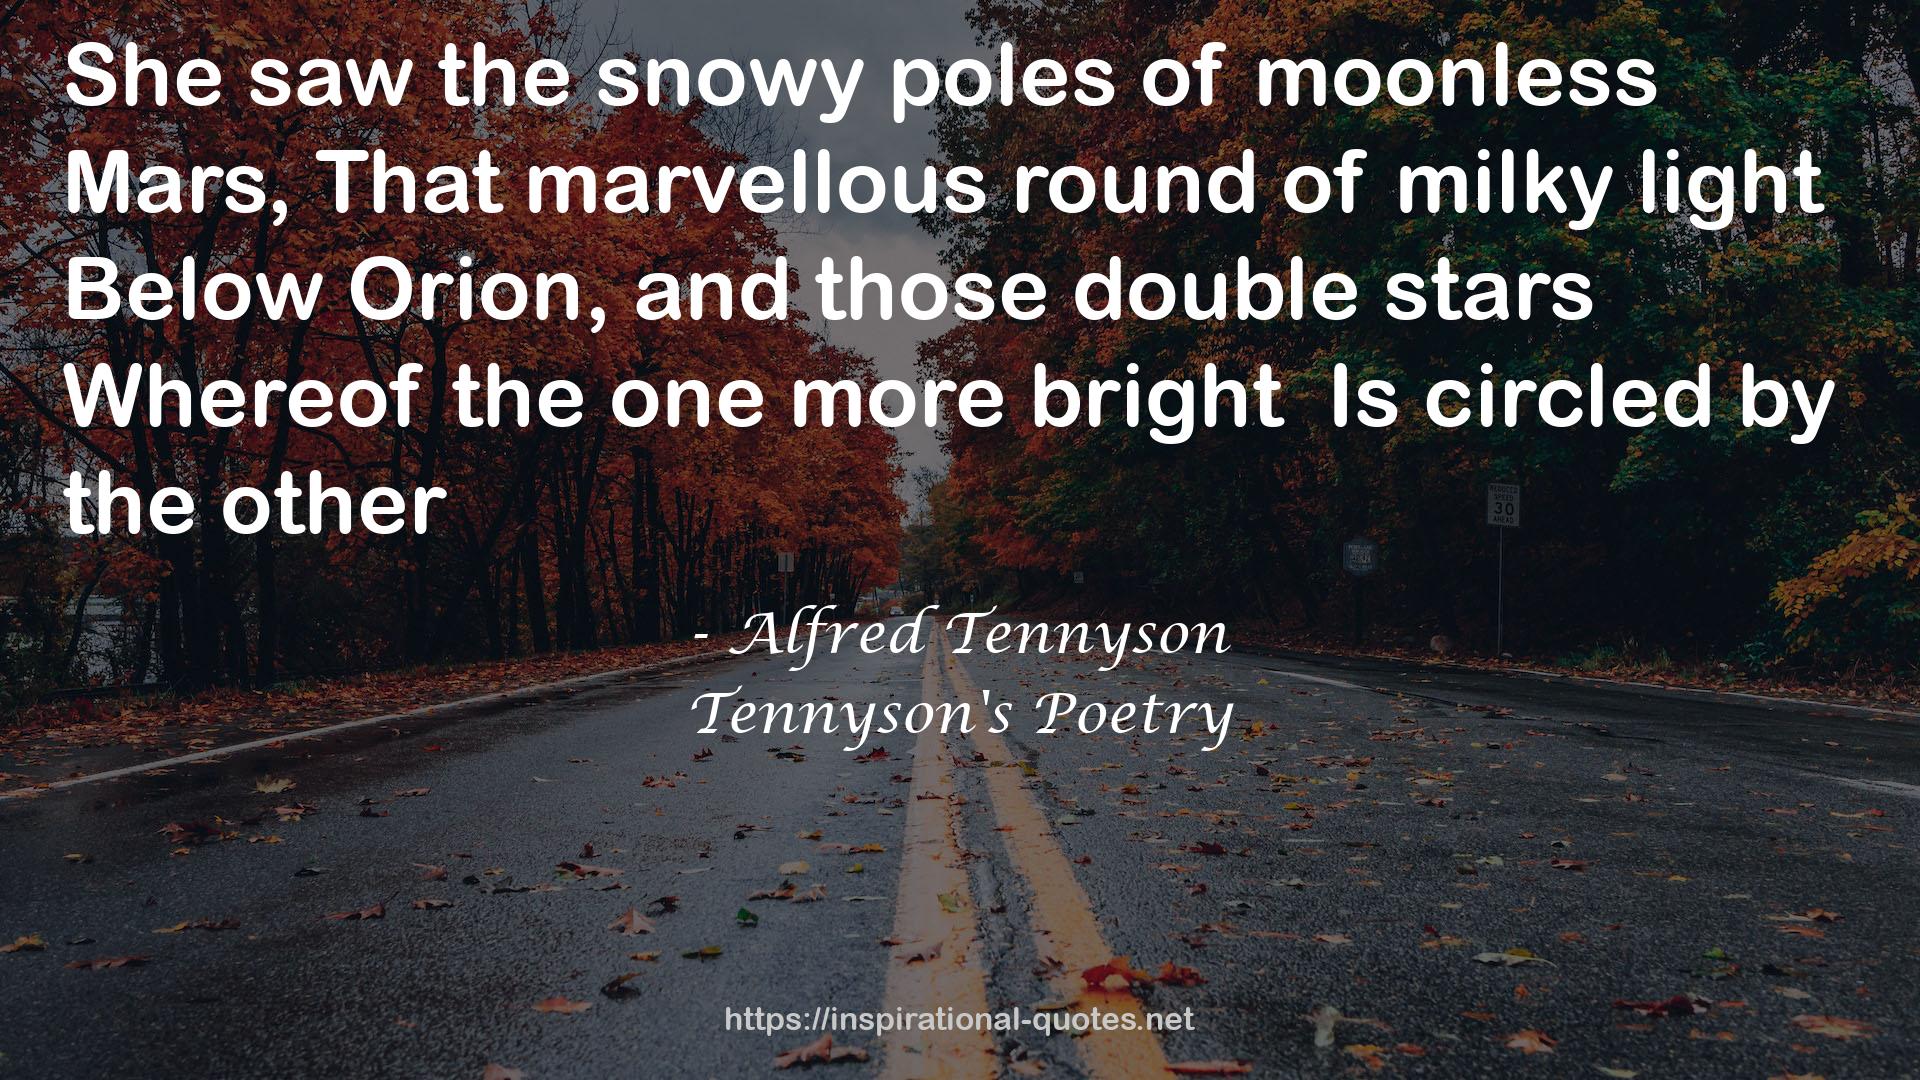 Tennyson's Poetry QUOTES